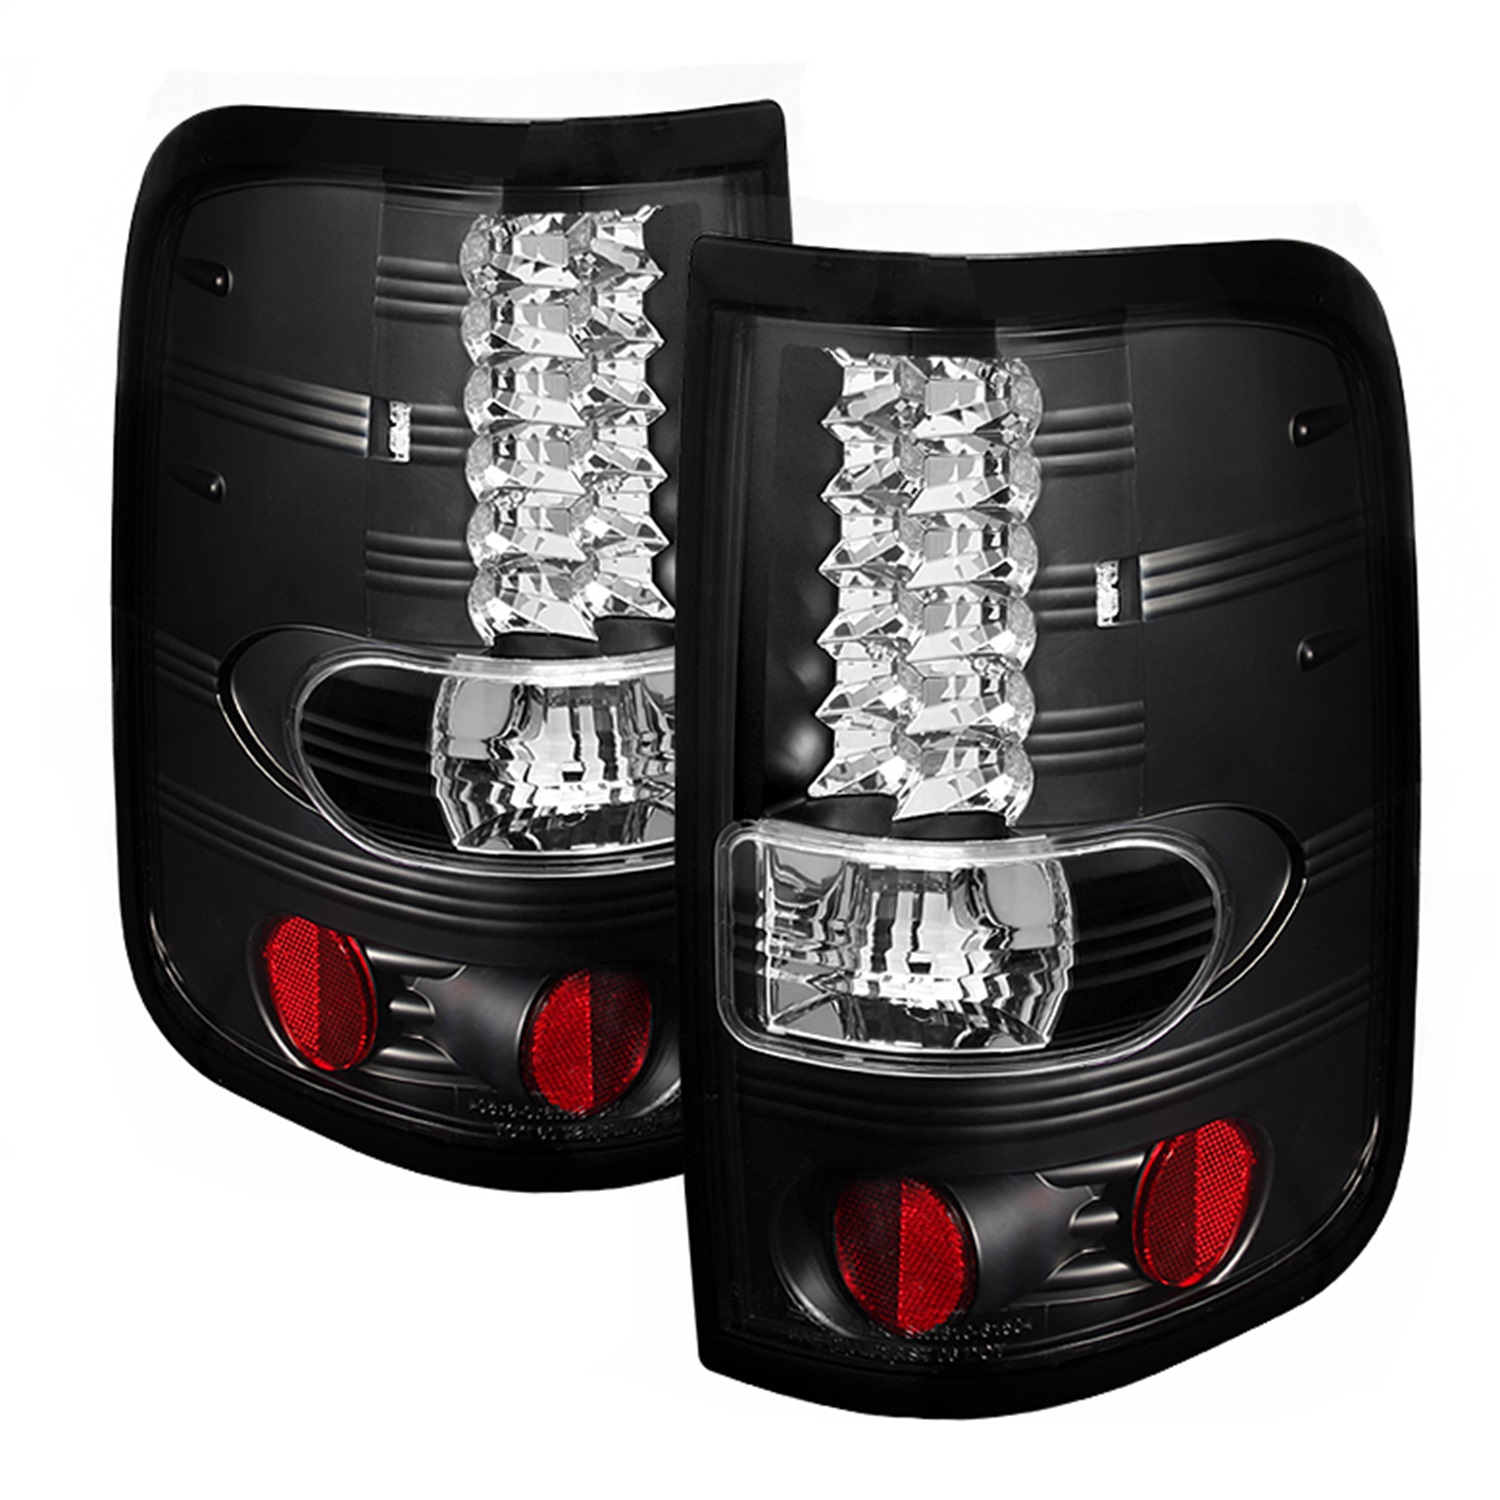 Spyder Auto 5003249 LED Tail Lights Fits 04-08 F-150